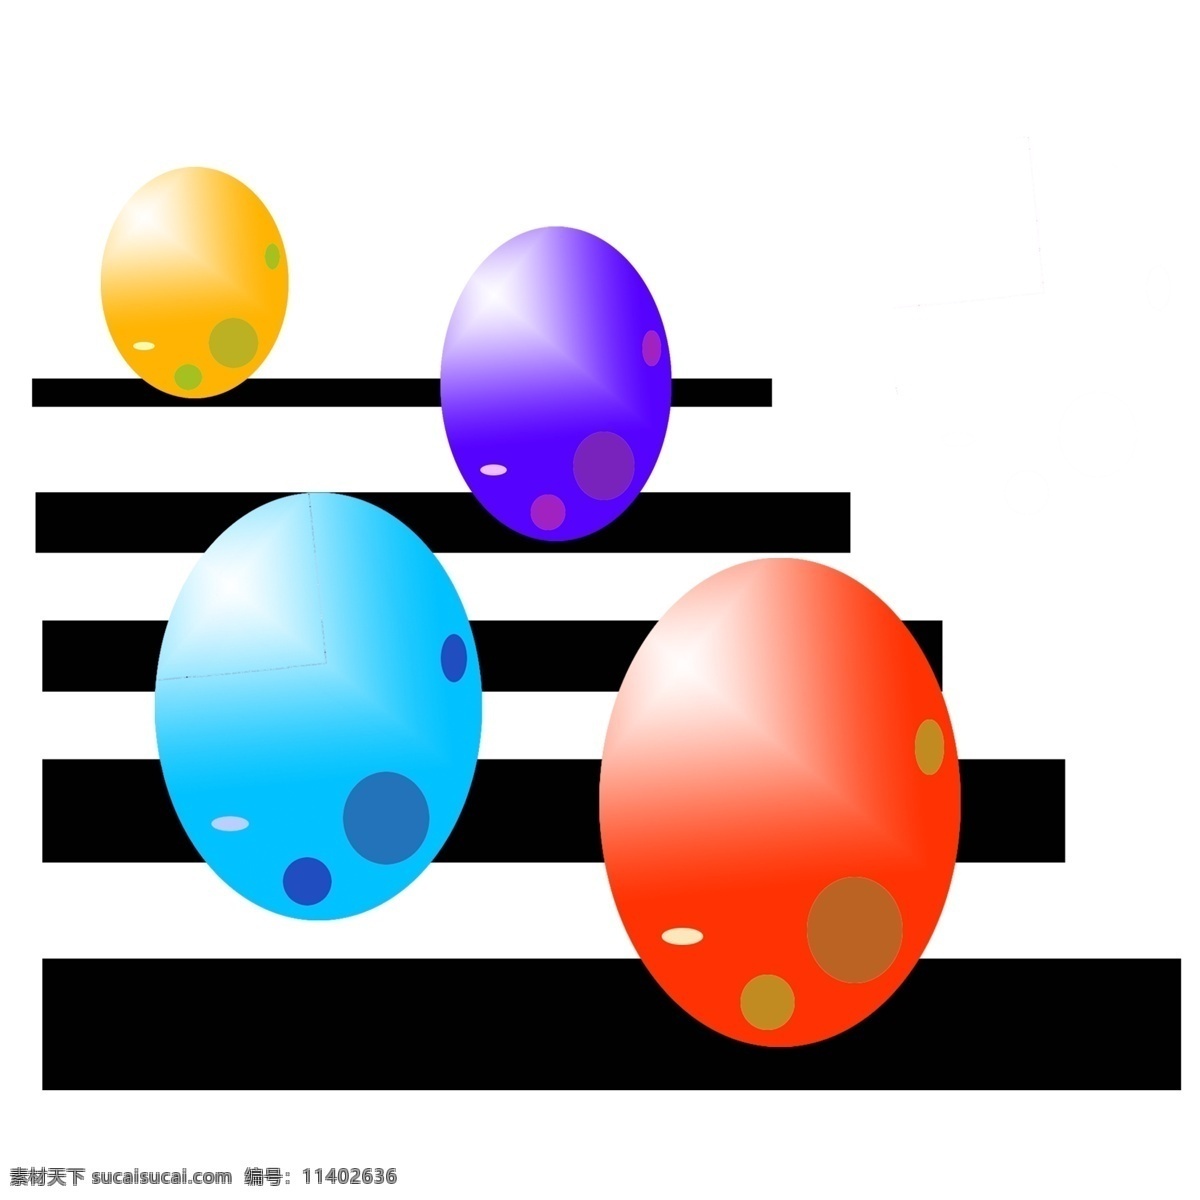 彩色 复活节 彩蛋 插画 彩色的彩蛋 卡通插画 鸡蛋插画 礼物插画 礼品插画 复活节插画 红色的彩蛋